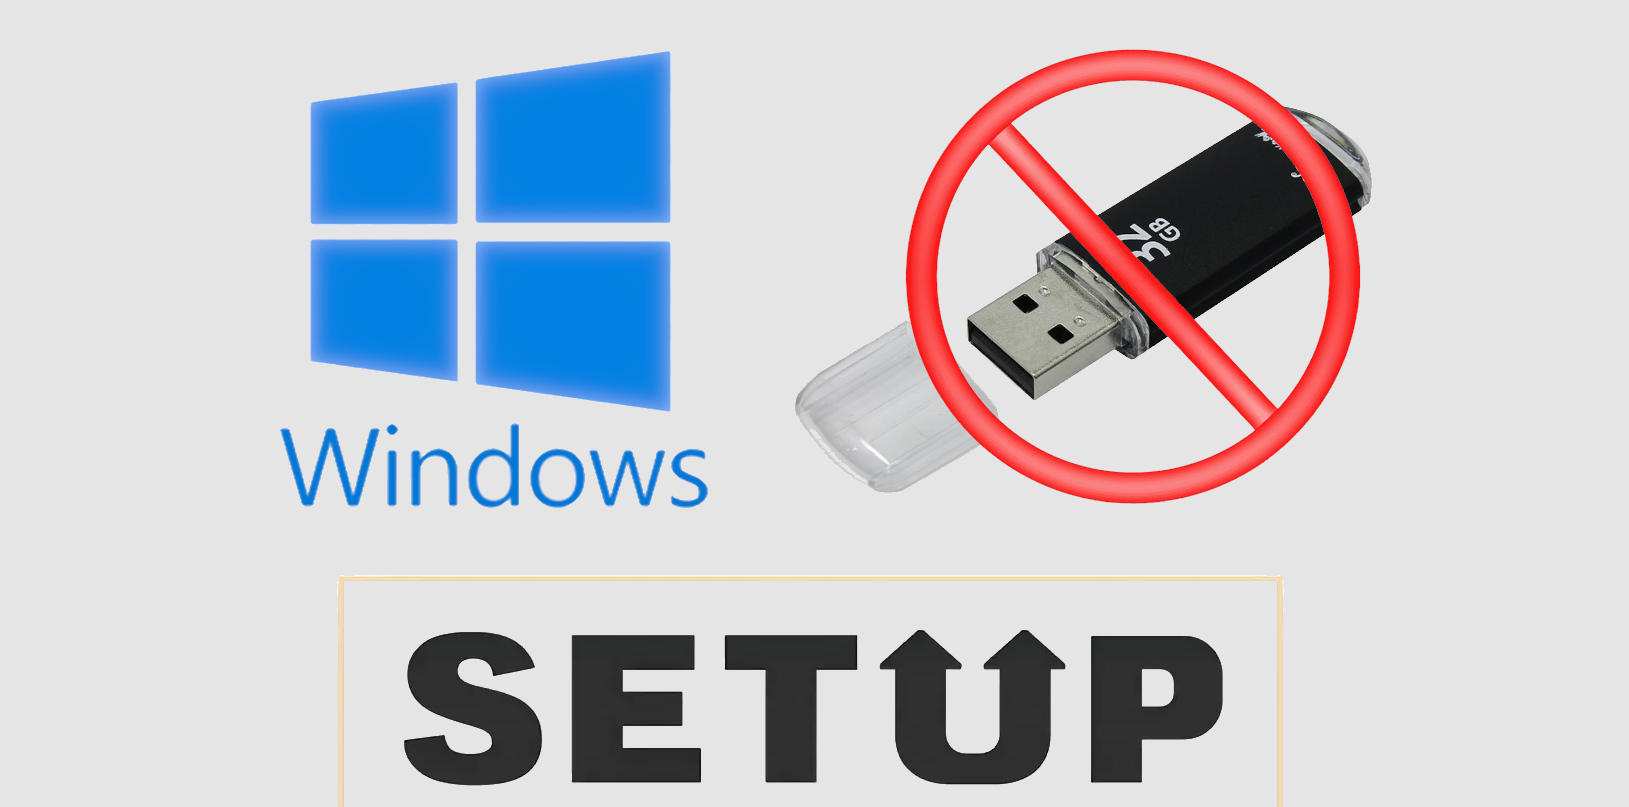 Создание загрузочной флешки Windows 7-10 с набором утилит, драйверов и программ